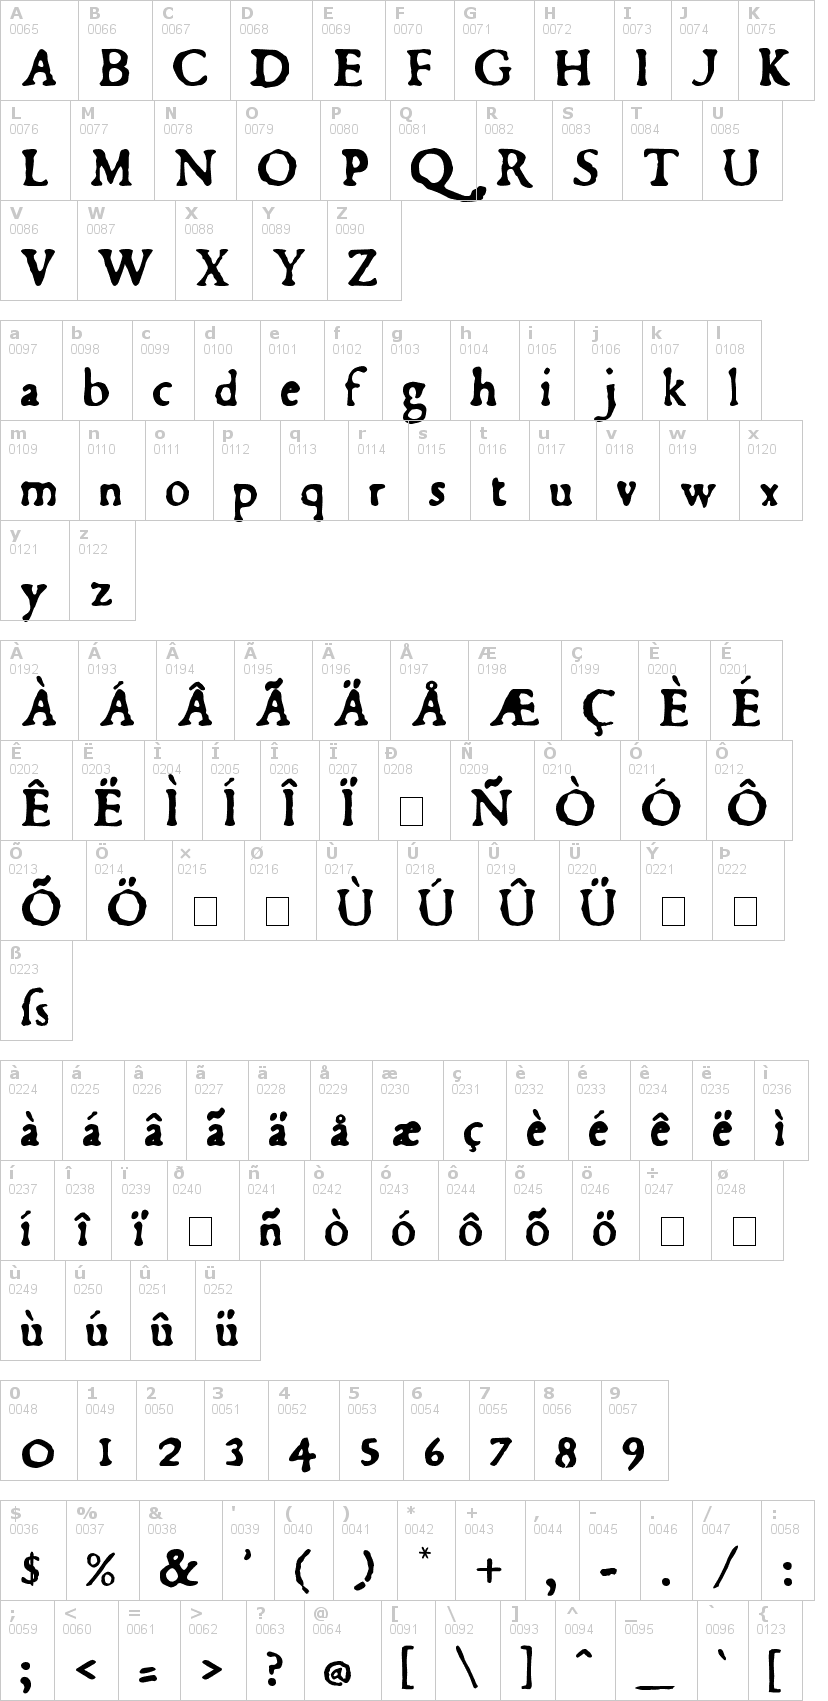 Lettere dell'alfabeto del font du-bellay con le quali è possibile realizzare adesivi prespaziati